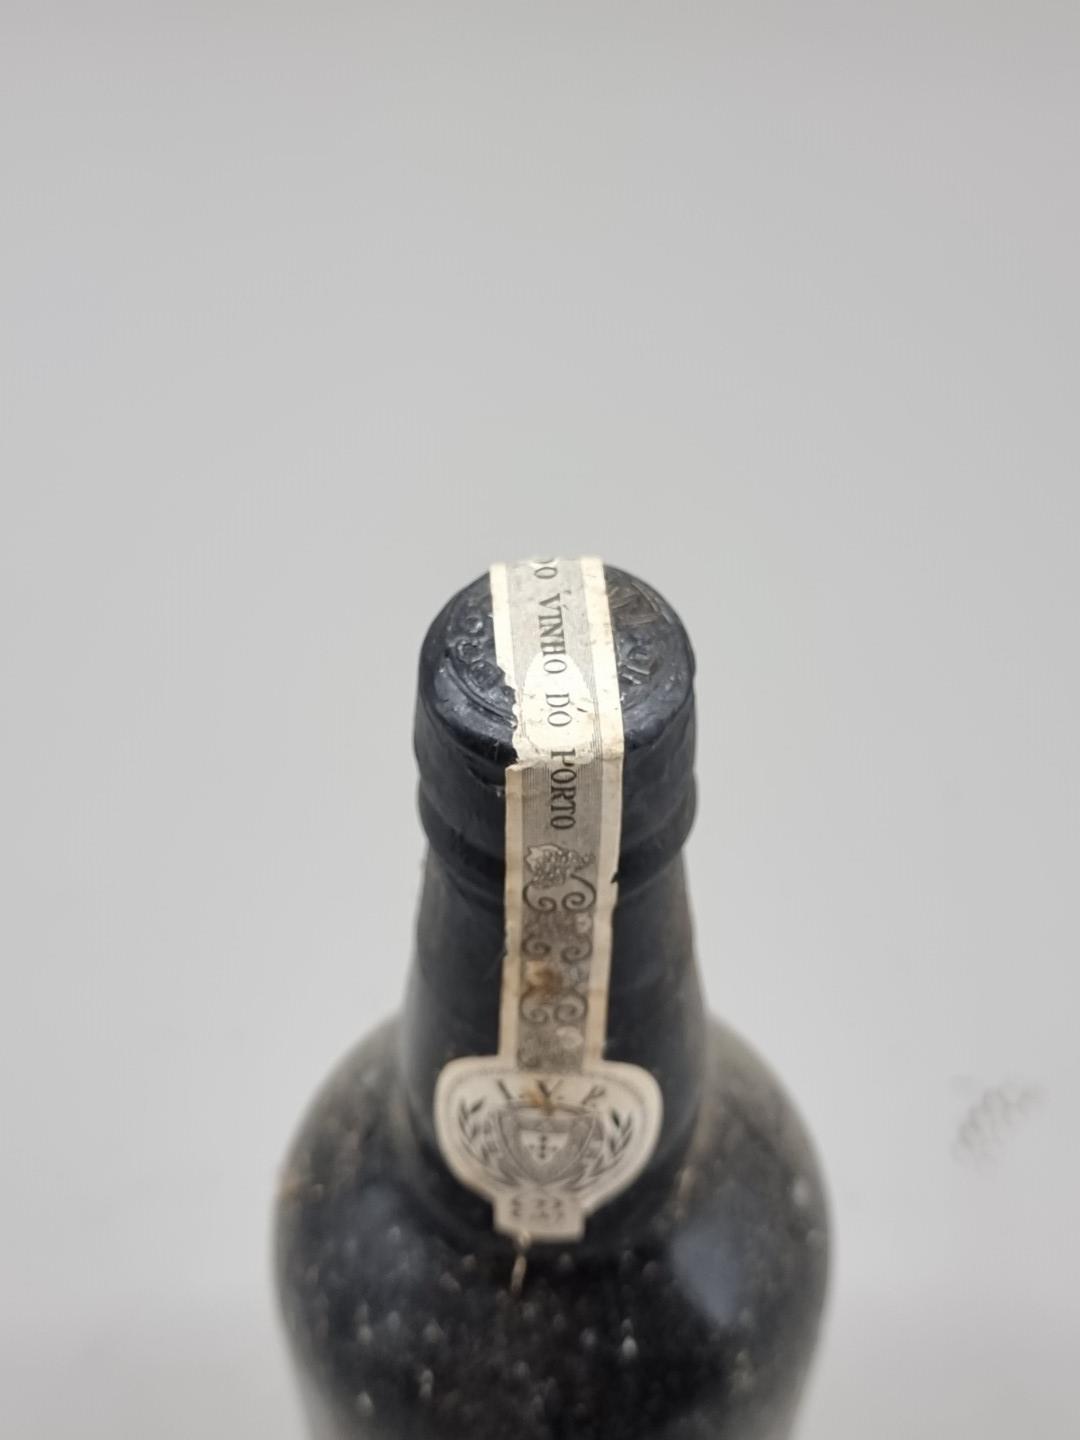 A bottle of Quinta Do Noval 1963 Vintage Port. - Image 6 of 6